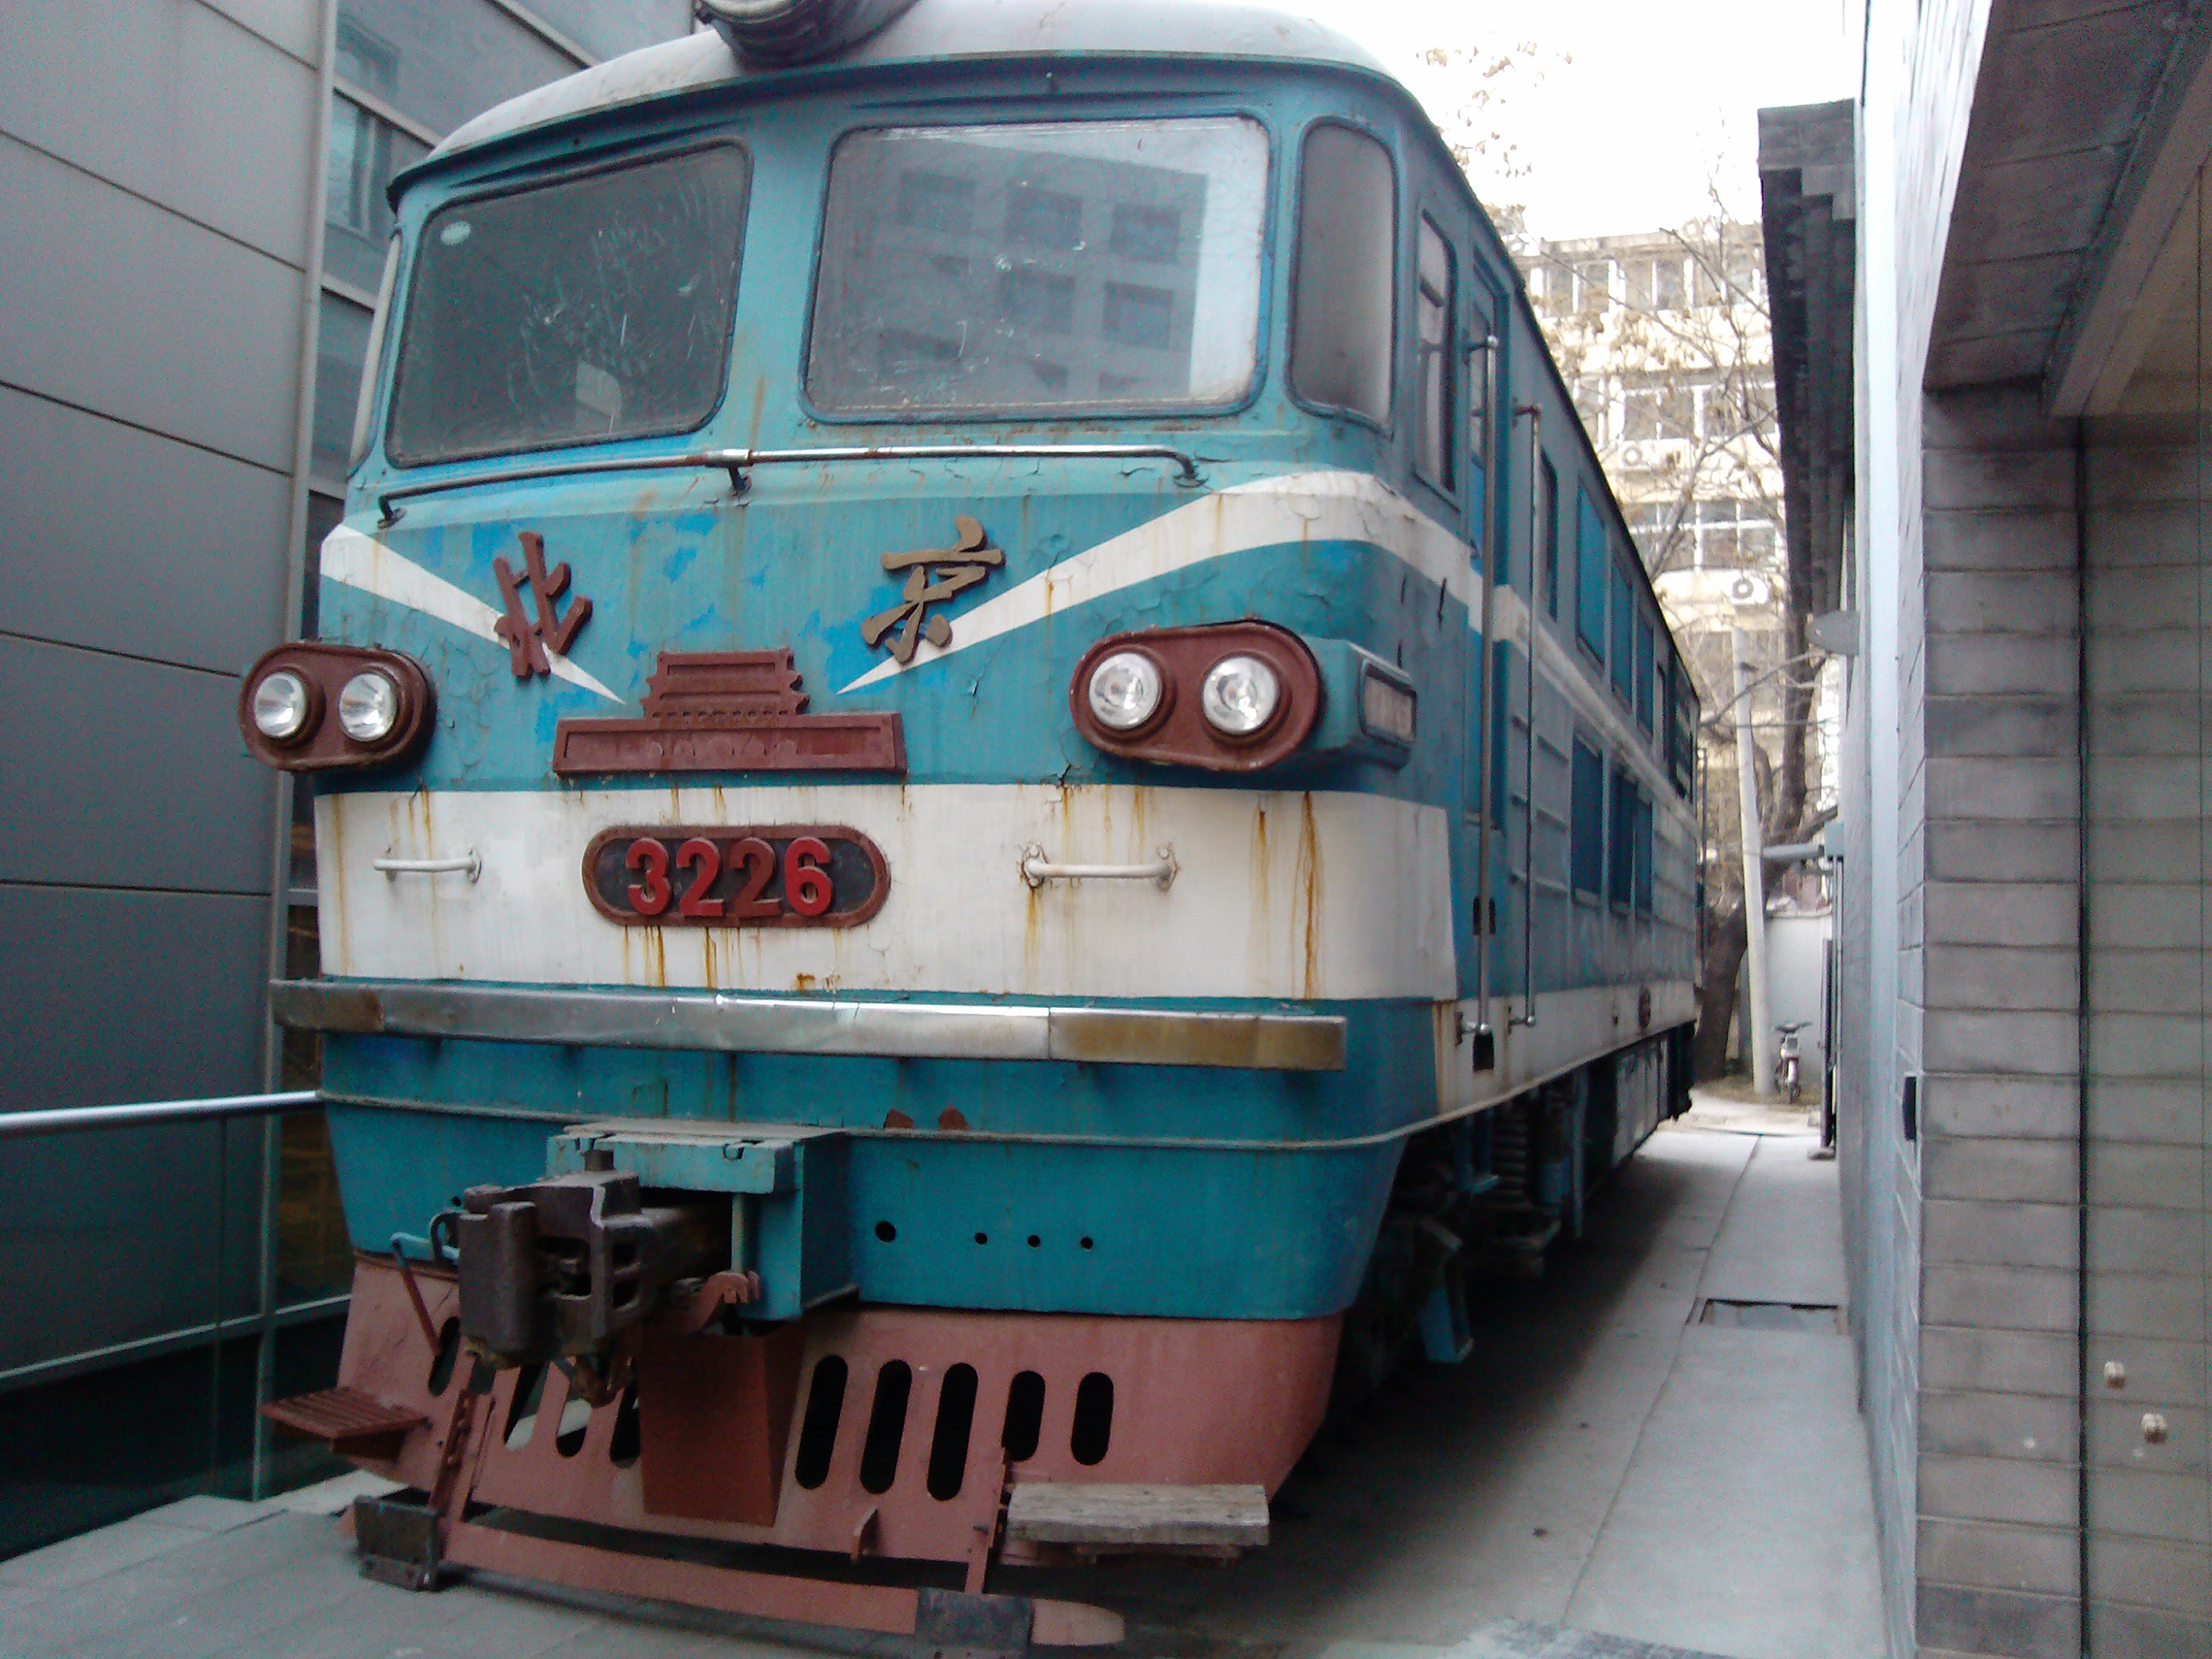 保存在當代MOMA藝術區內的北京型3226號機車